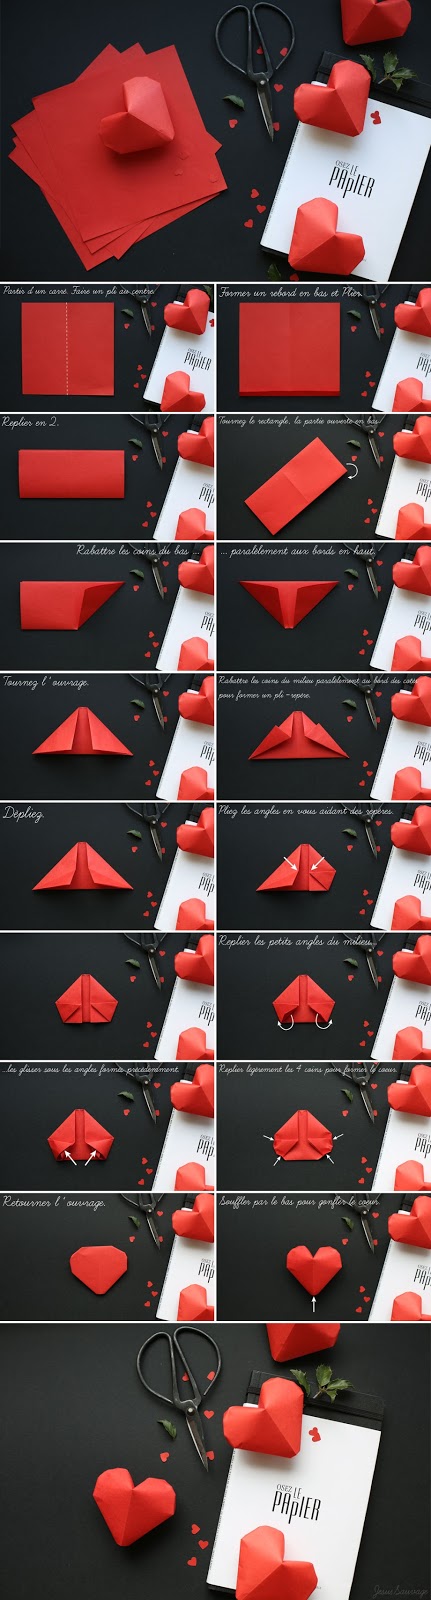 Come realizzare dei cuori di carta 3D con l'origami